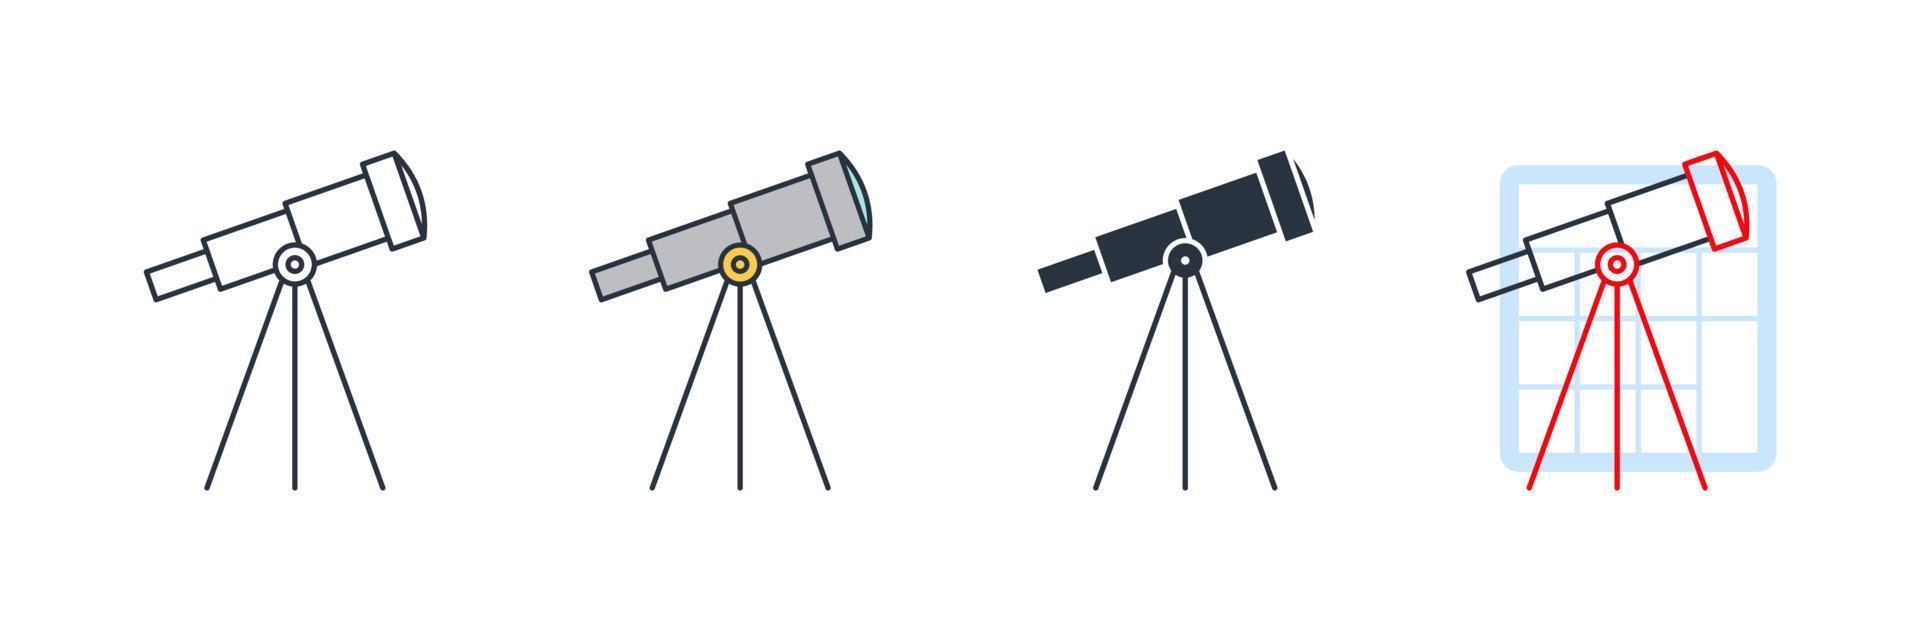 ilustração em vetor astronomia ícone logotipo. modelo de símbolo de telescópio para coleção de design gráfico e web